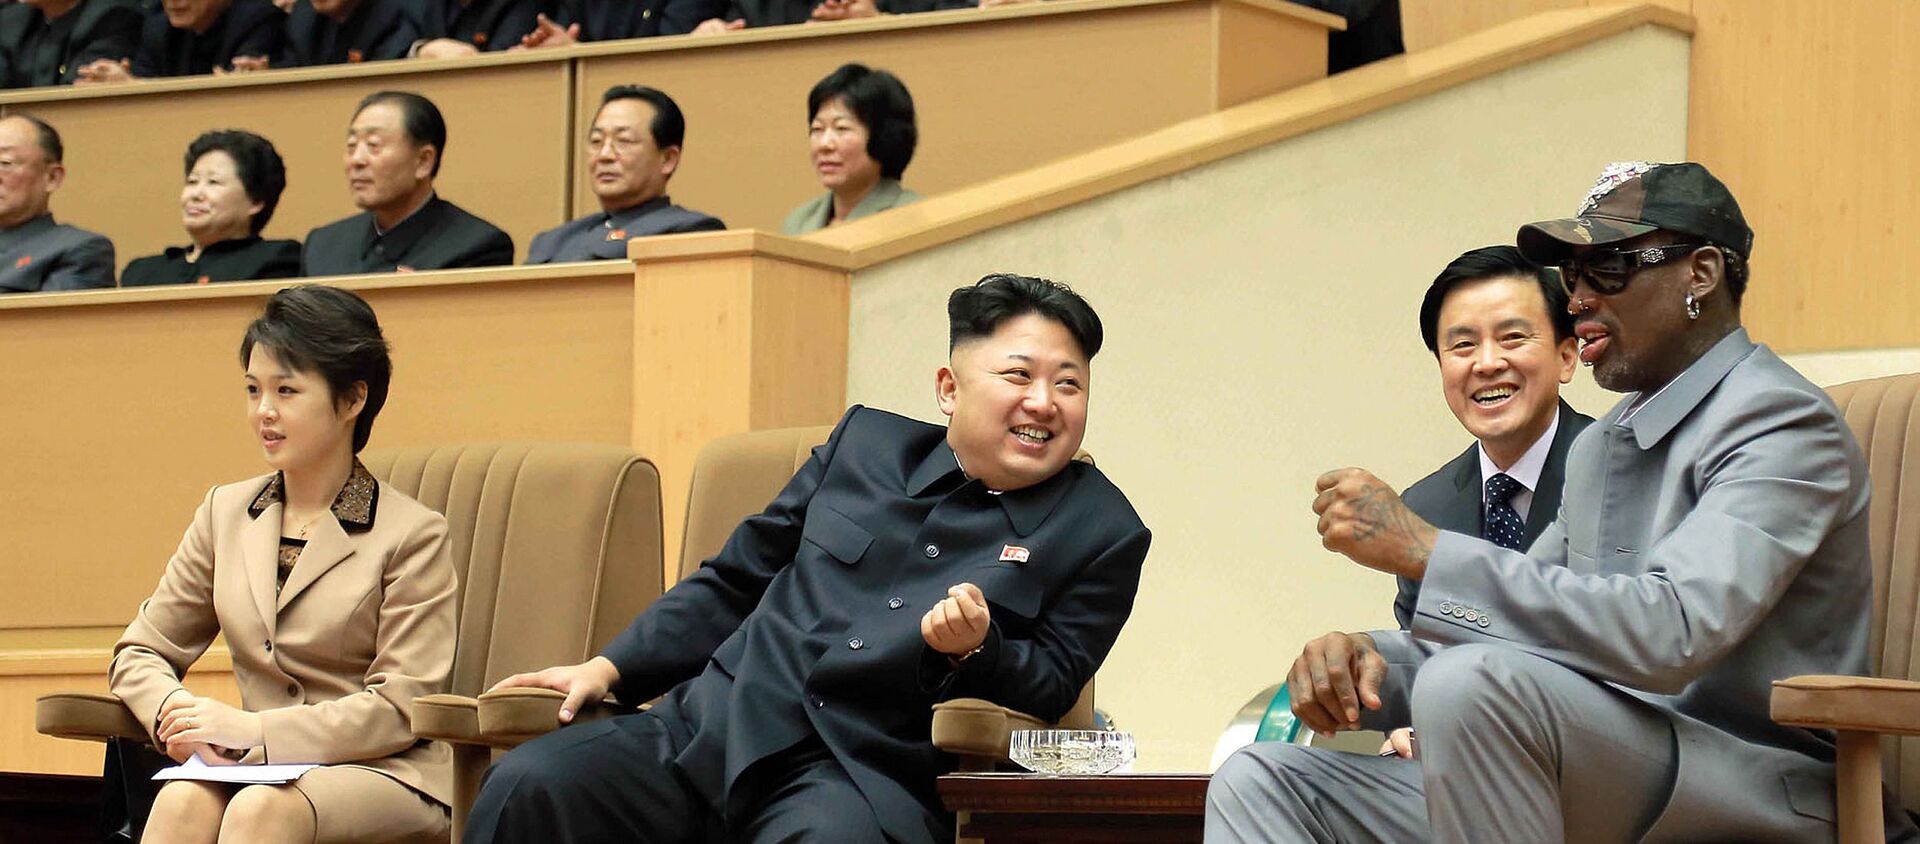 Kuzey Kore Lideri Kim Jong-un ve eski NBA yıldızı Dennis Rodman - Sputnik Türkiye, 1920, 21.05.2020